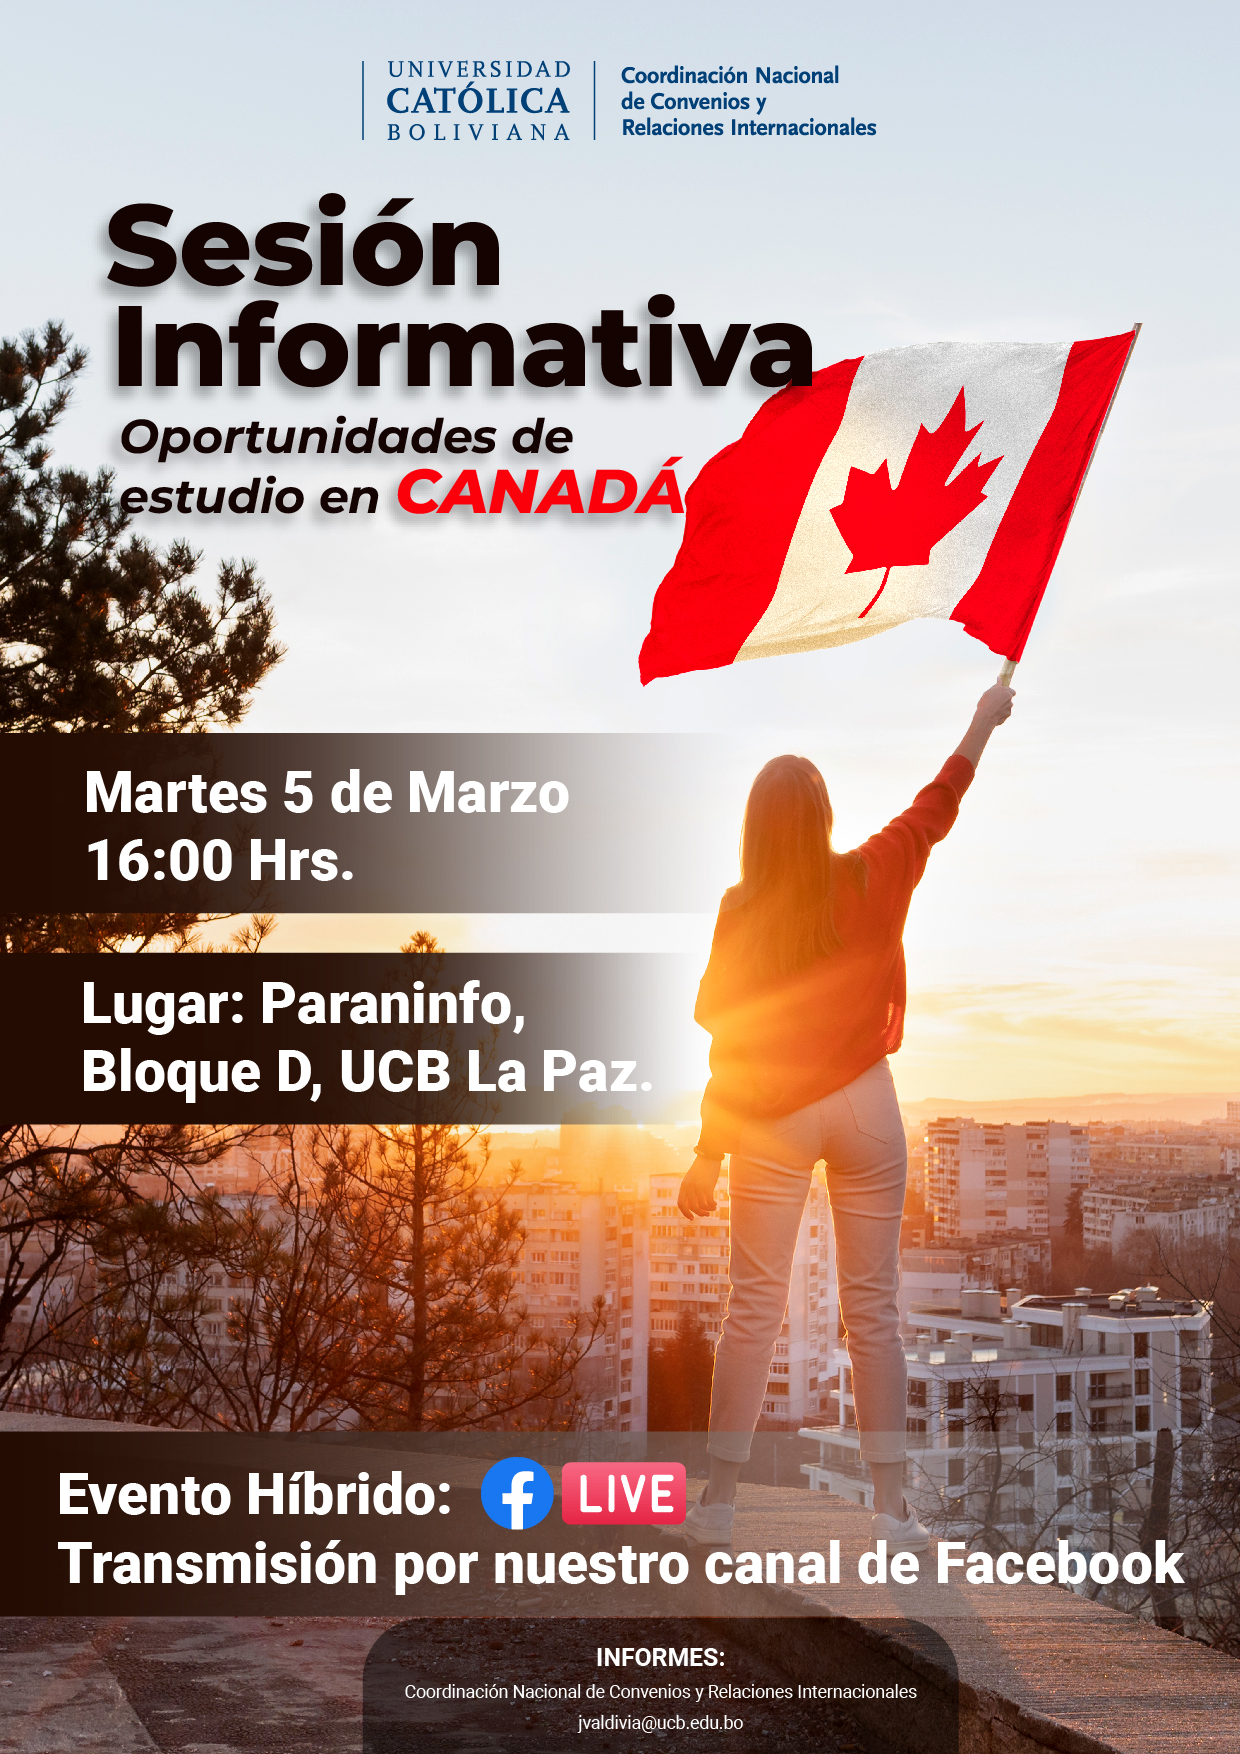 Sesión Informativa “Oportunidades de estudio en Canadá”